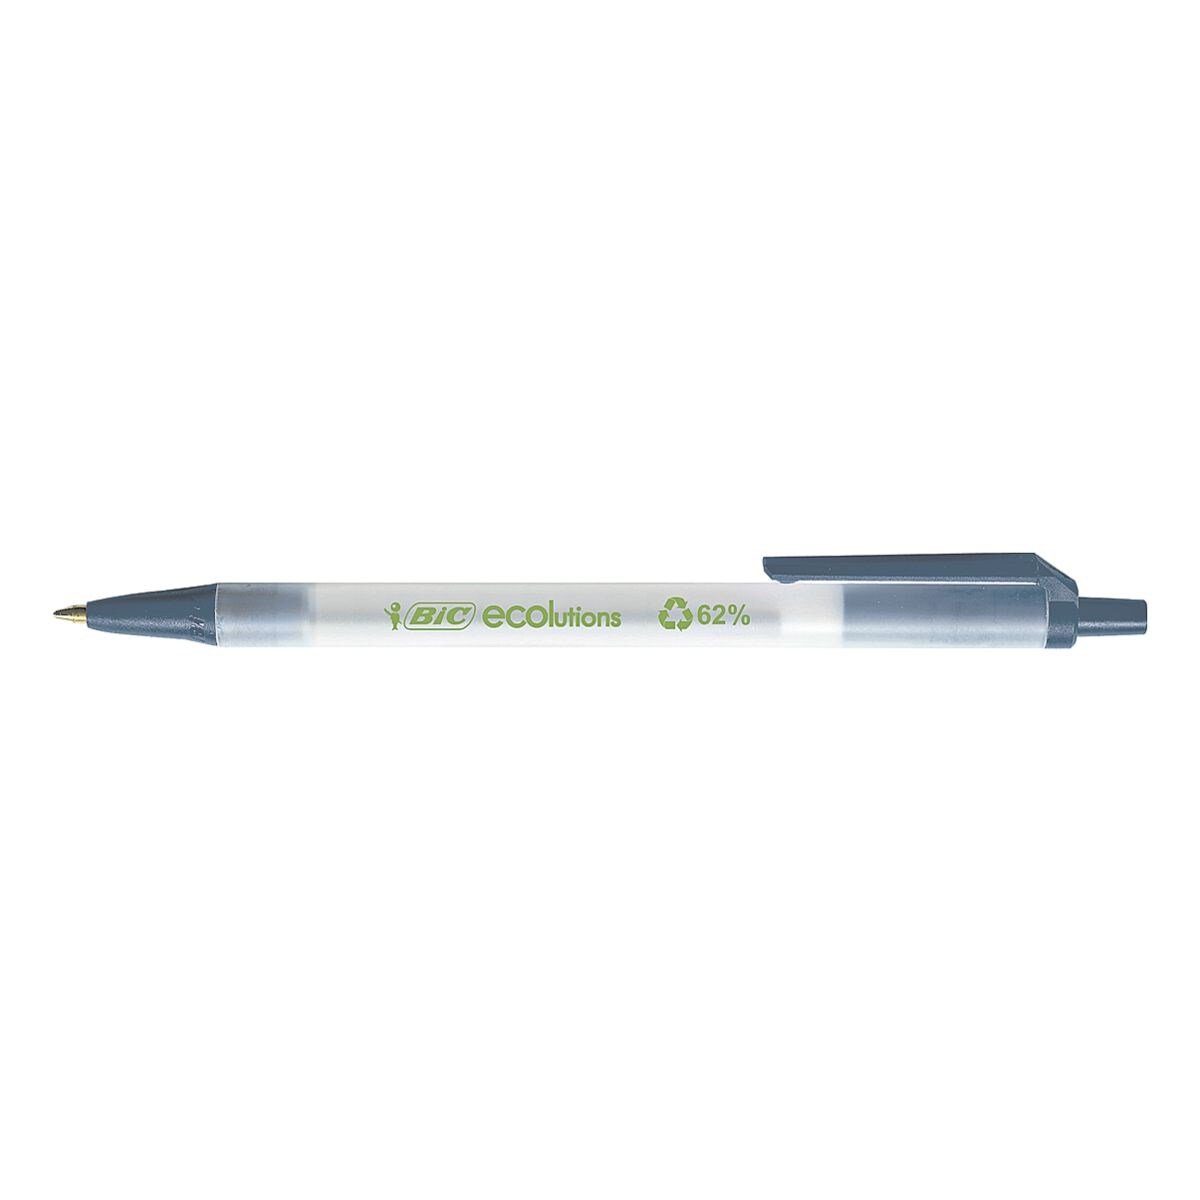 aus recyceltem Clic Kugelschreiber 62% Stic, blau/transparent zu Material BIC Ecolutions